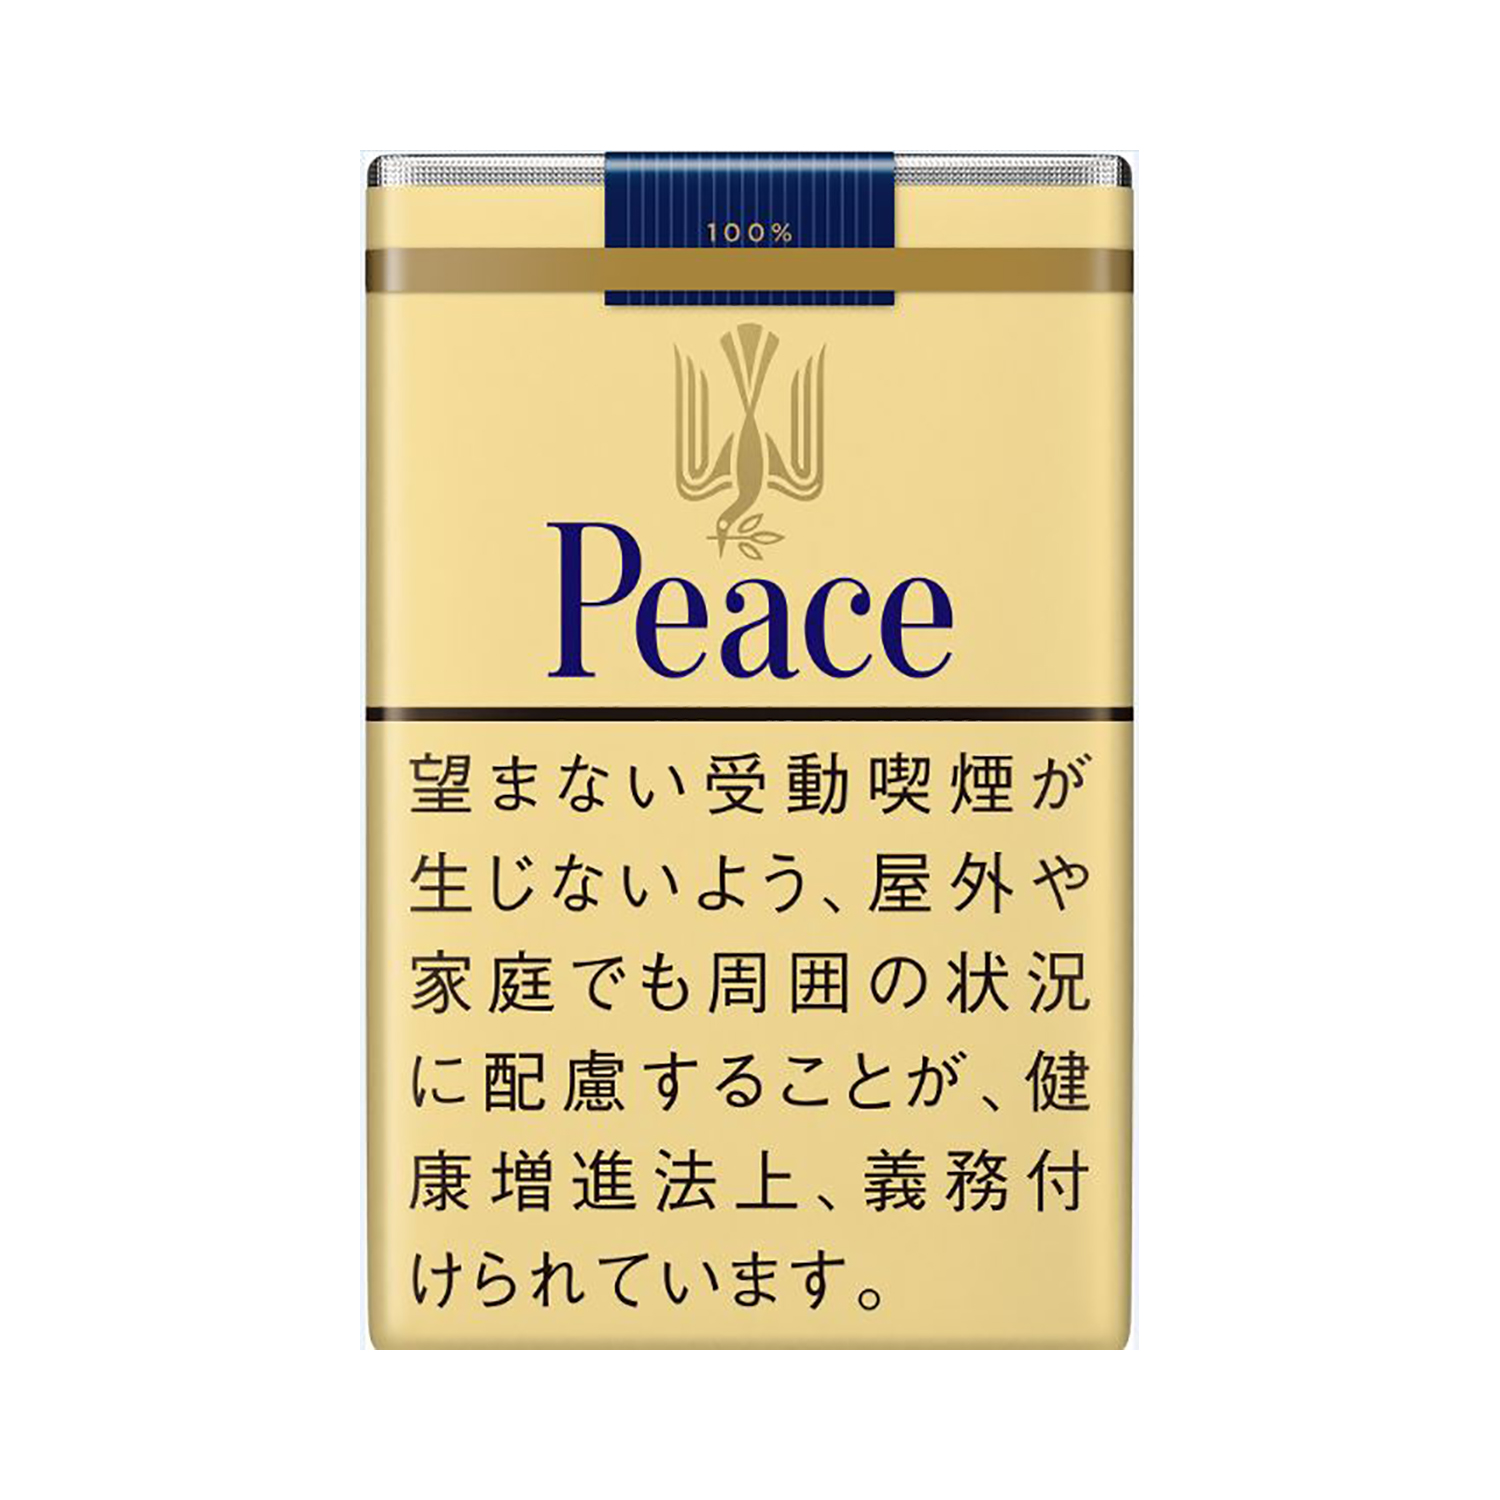 和平(Peace) 黄和平 经典款 21Mg 美国现货2-3天寄送 美国 澳洲 加拿大 英国